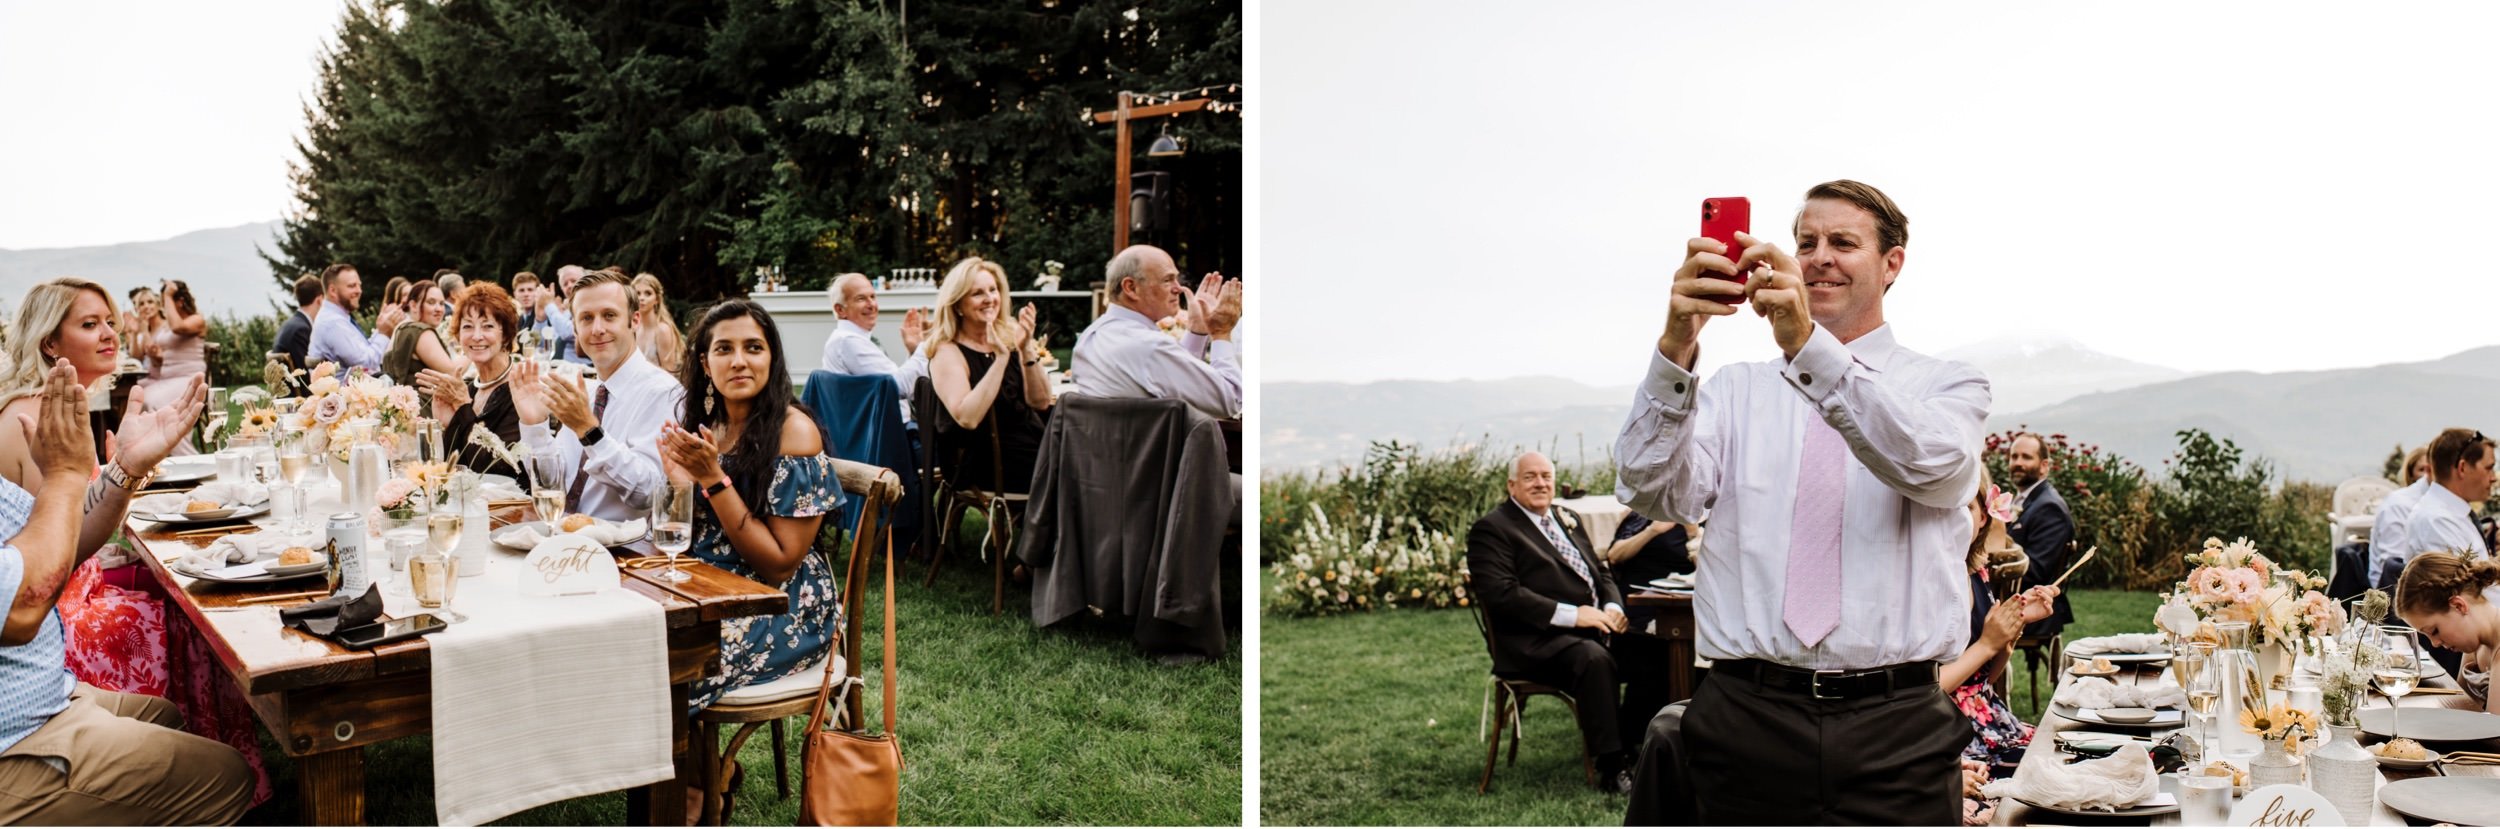 Modern-garden-wedding-at Gorge-Crest-Vineyard-262.jpg